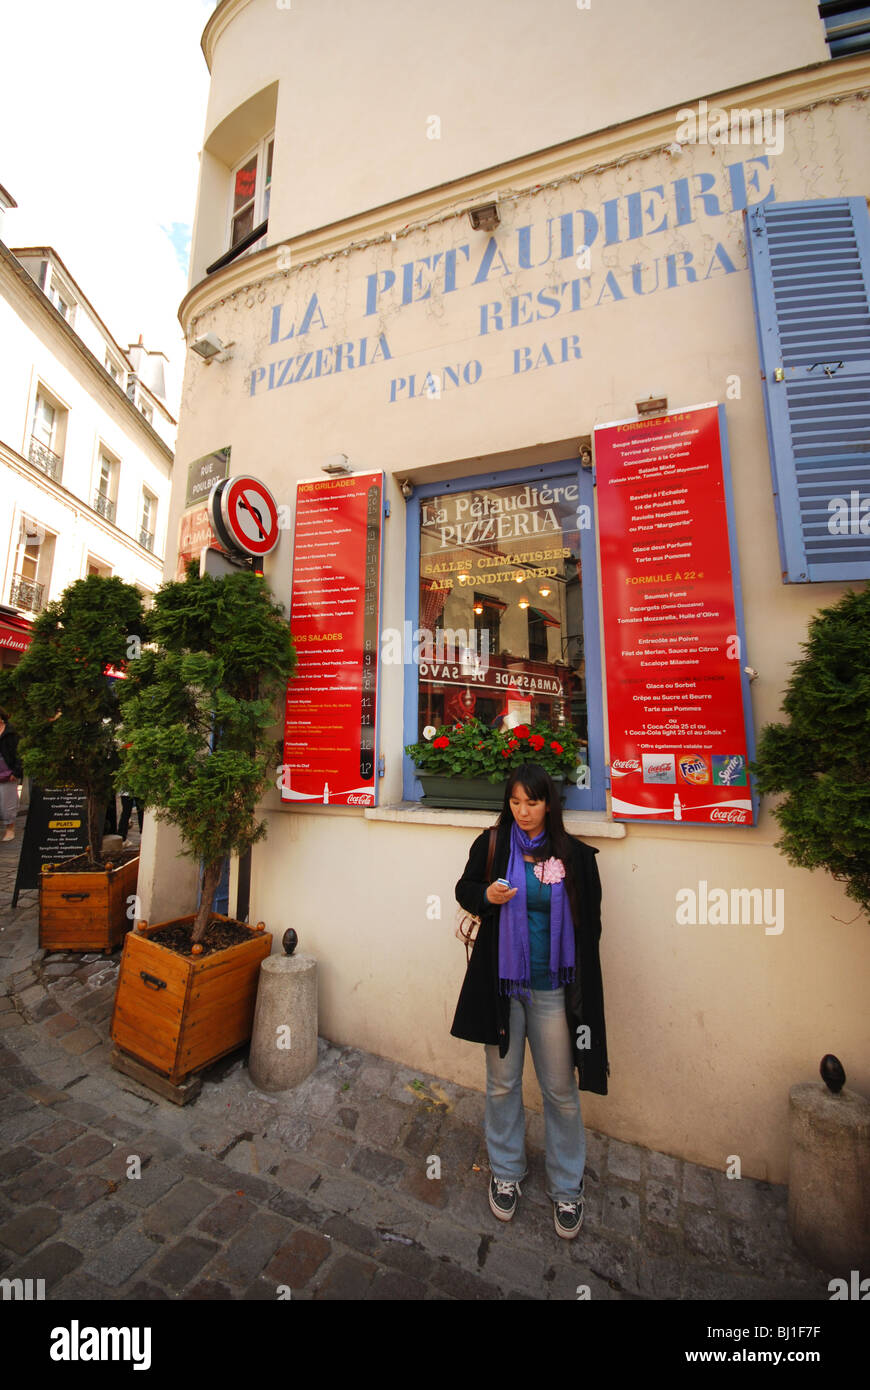 picturesque restaurant La Pétaudière at corner of Rue Poulbot Montmartre Paris France Stock Photo